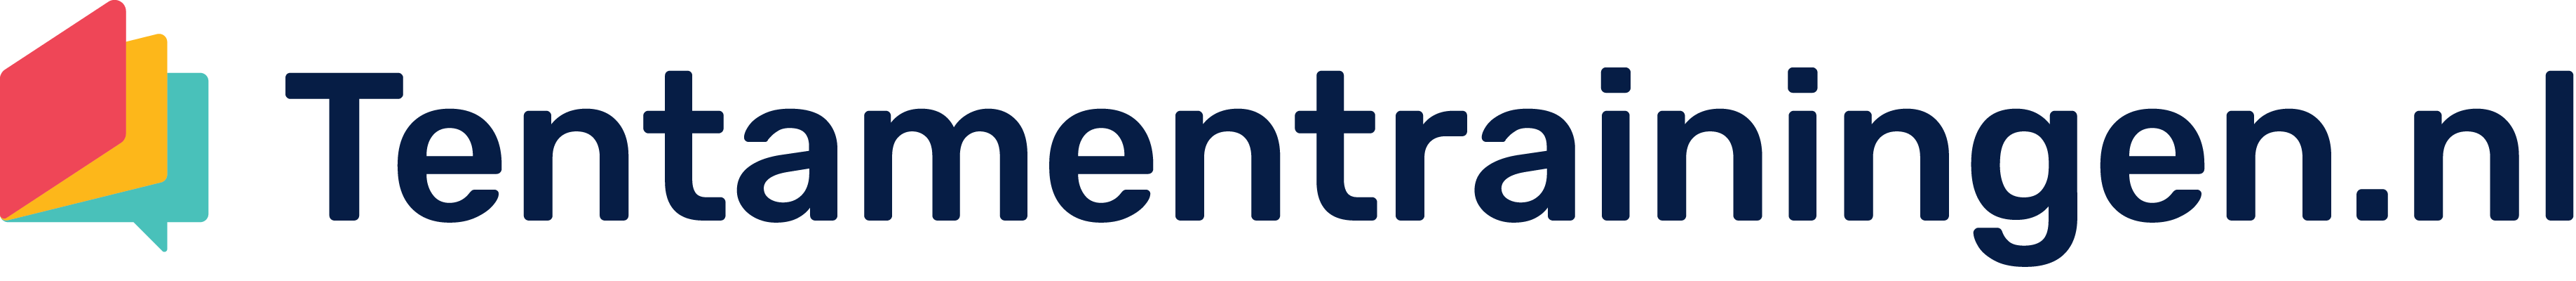 Tentamentrainingen.nl_logo